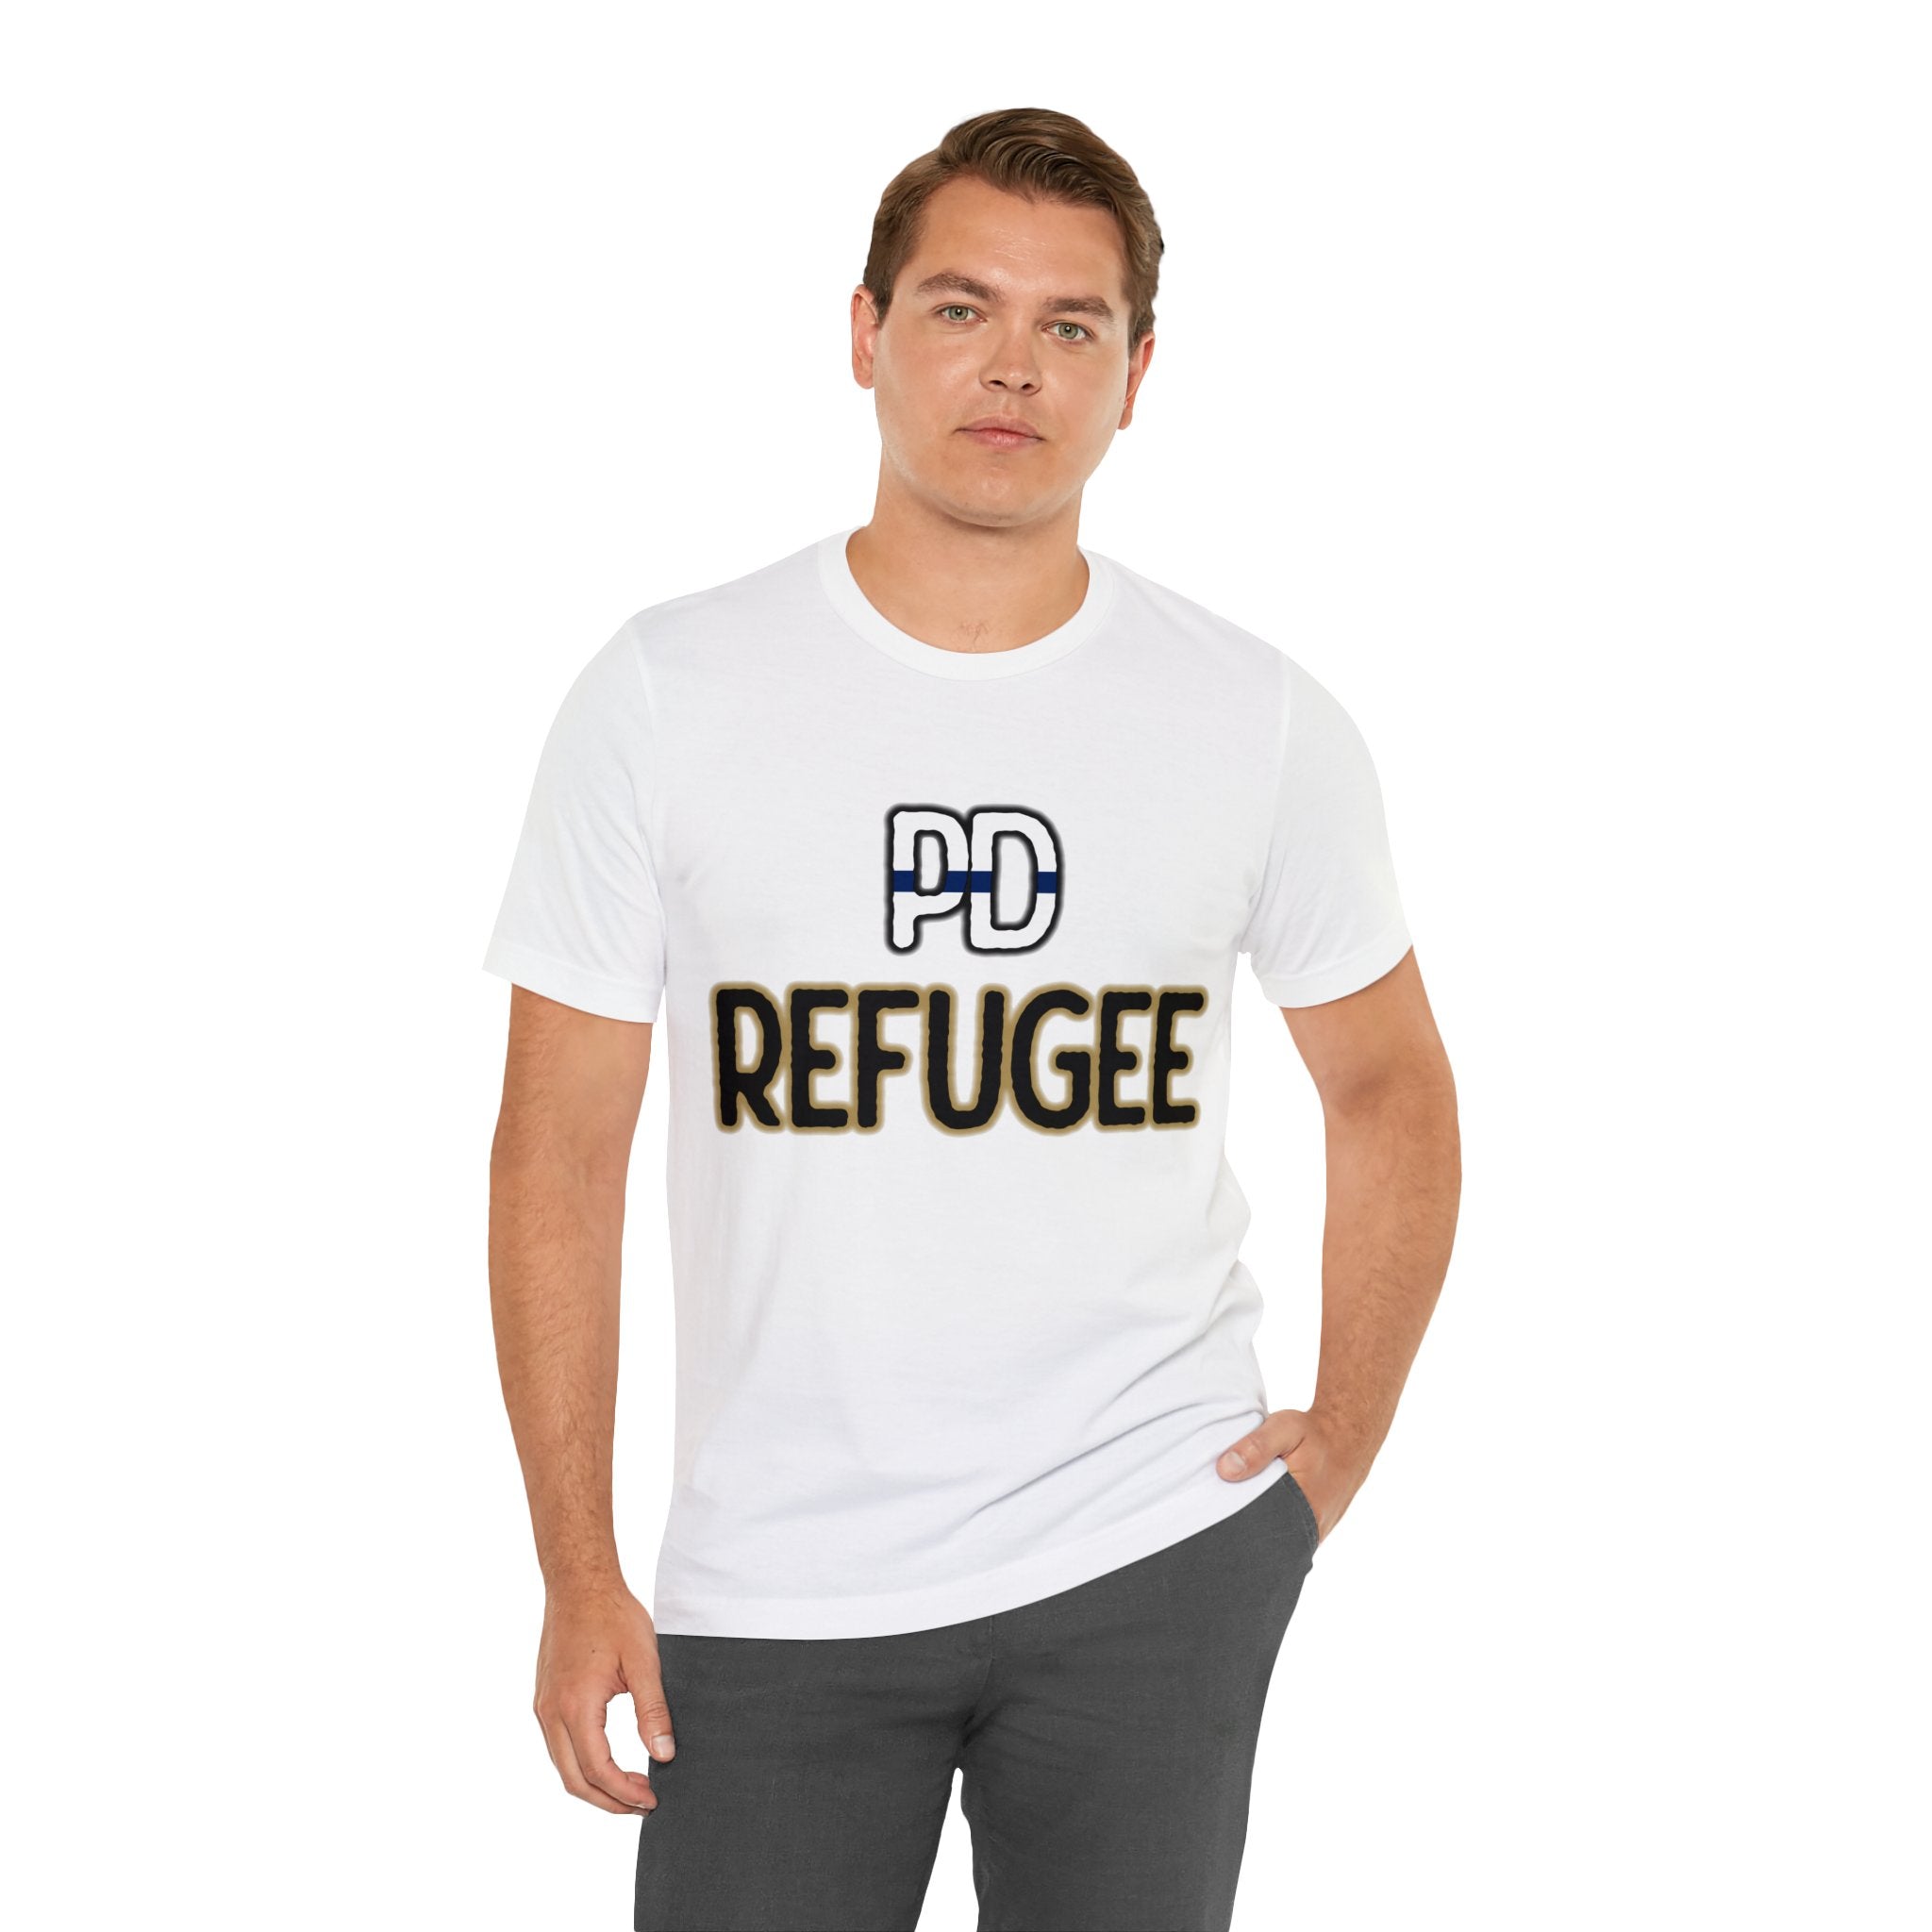 PD Refugee Tee